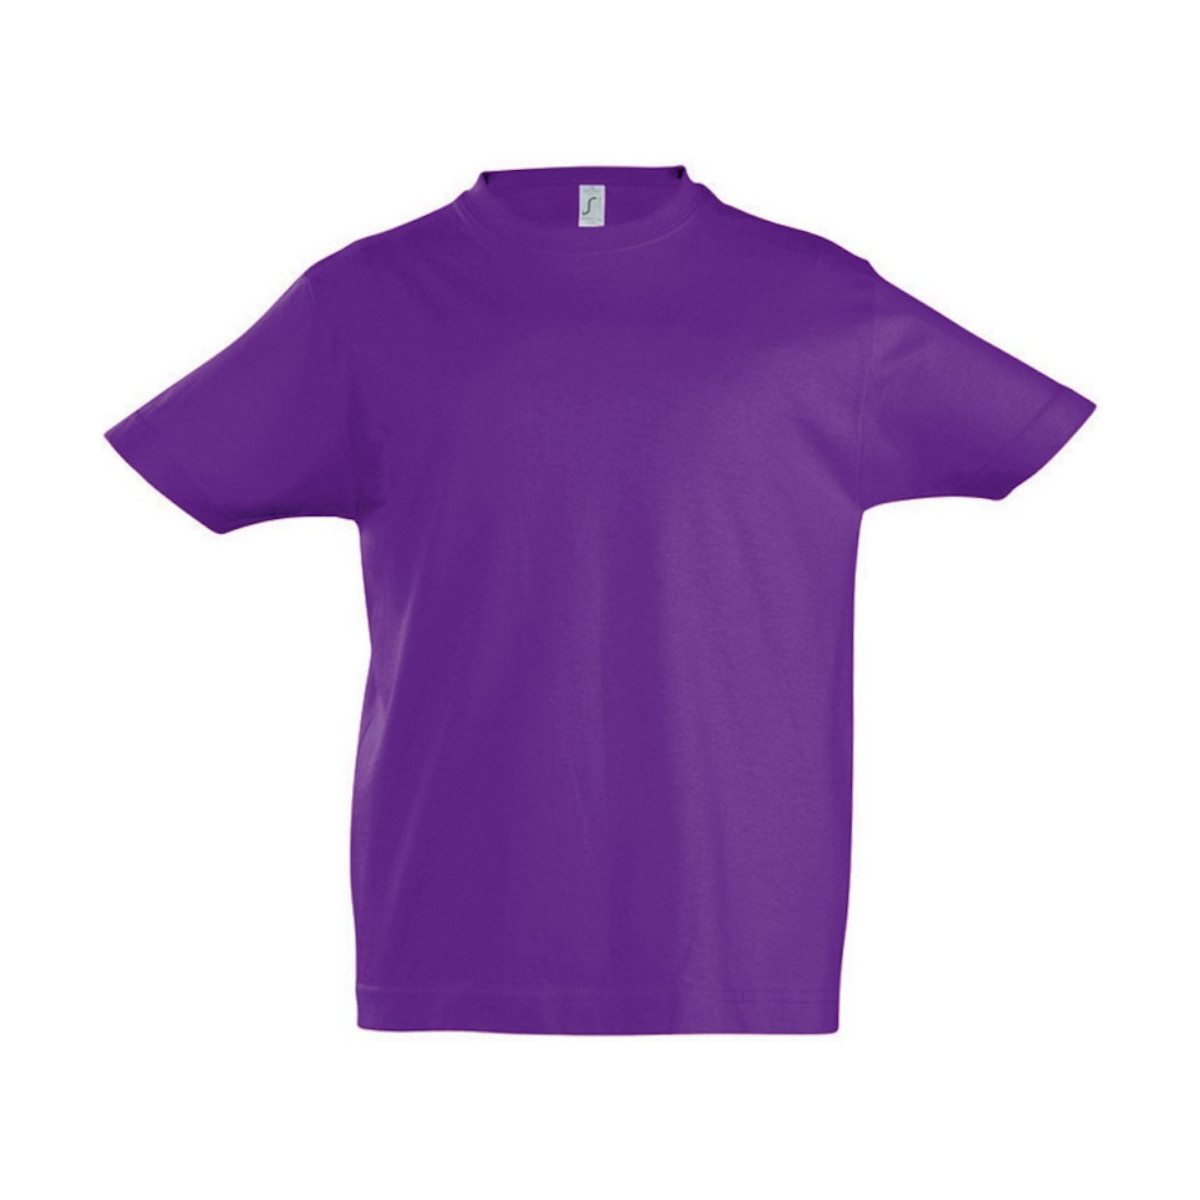 Vêtements Enfant T-shirts manches courtes Sols 11770 Violet